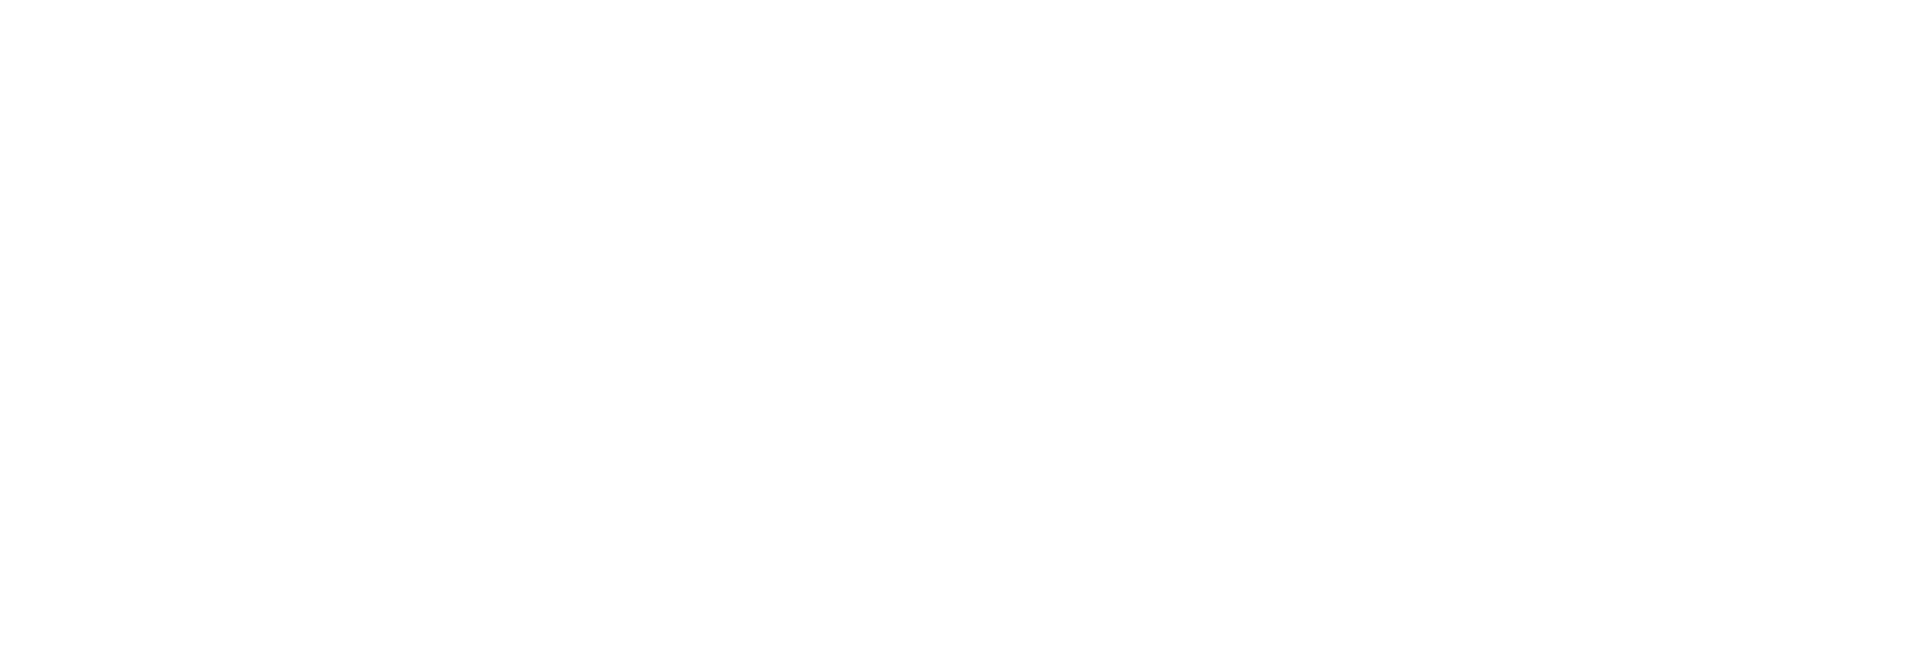 blueroceanproject-logo-adna